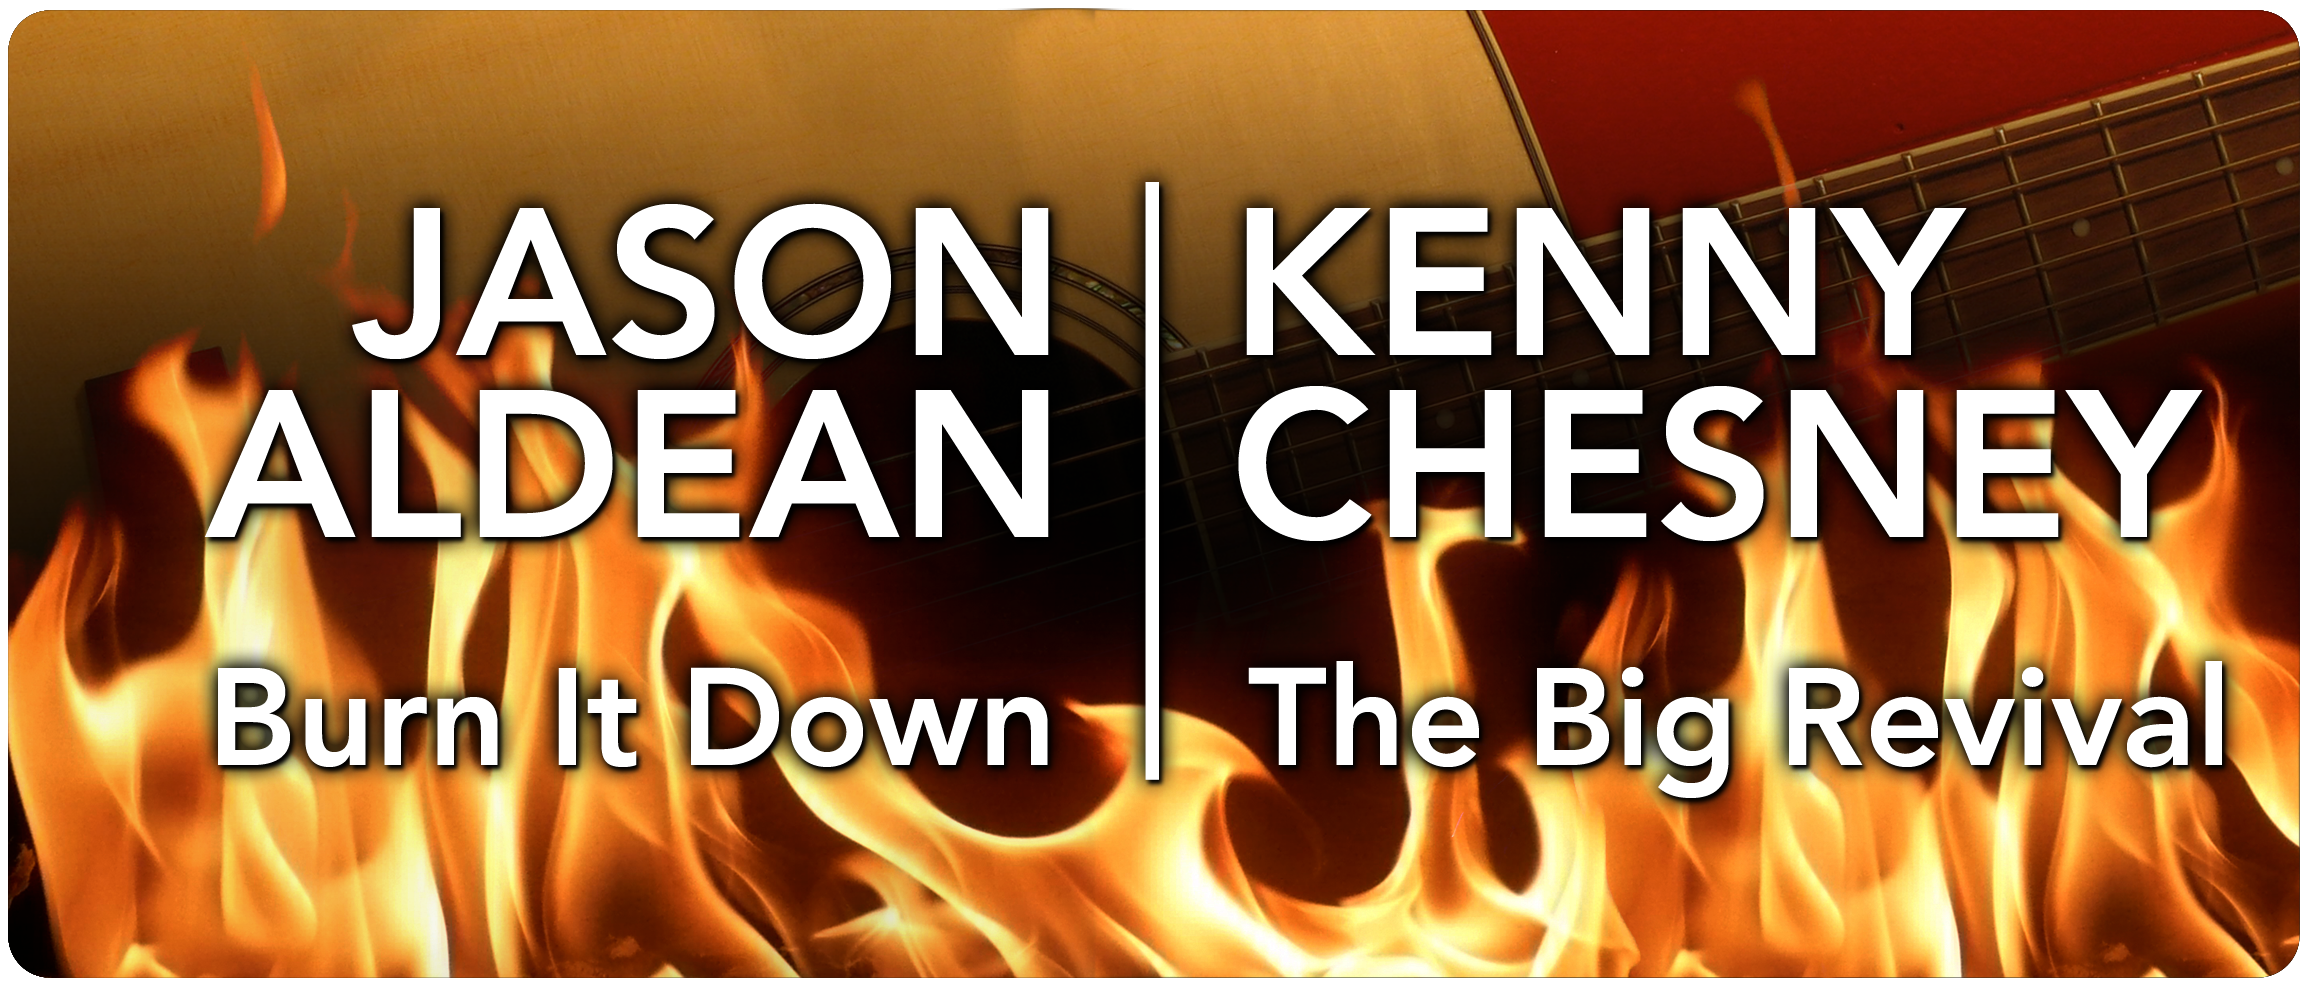 Kenny Chesney & Jason Aldean Tickets Ticket Down Slashes Kenny Chesney